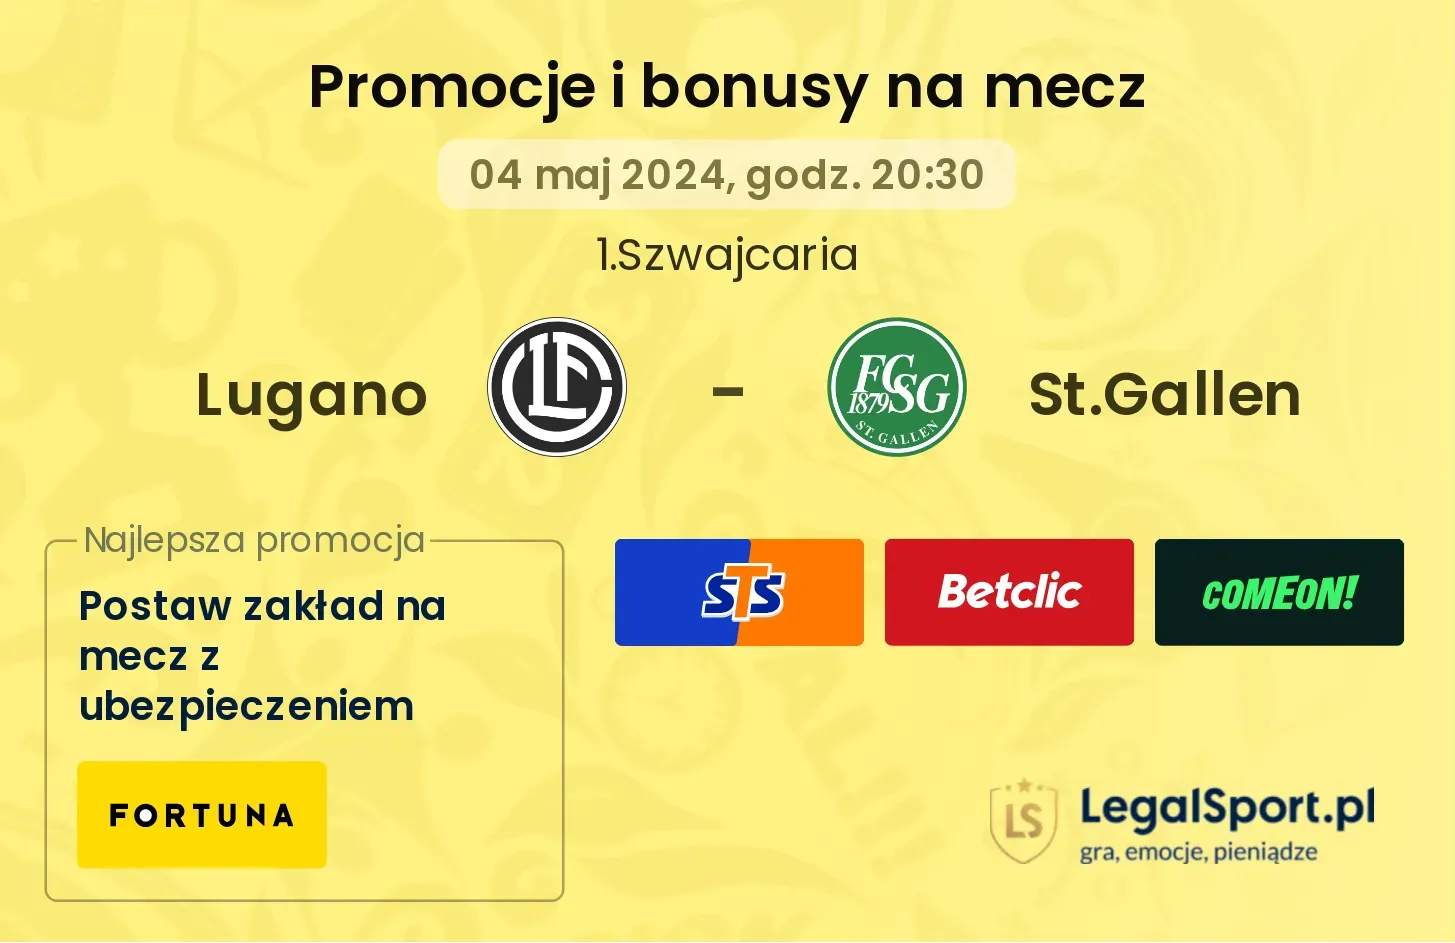 Lugano - St.Gallen promocje bonusy na mecz